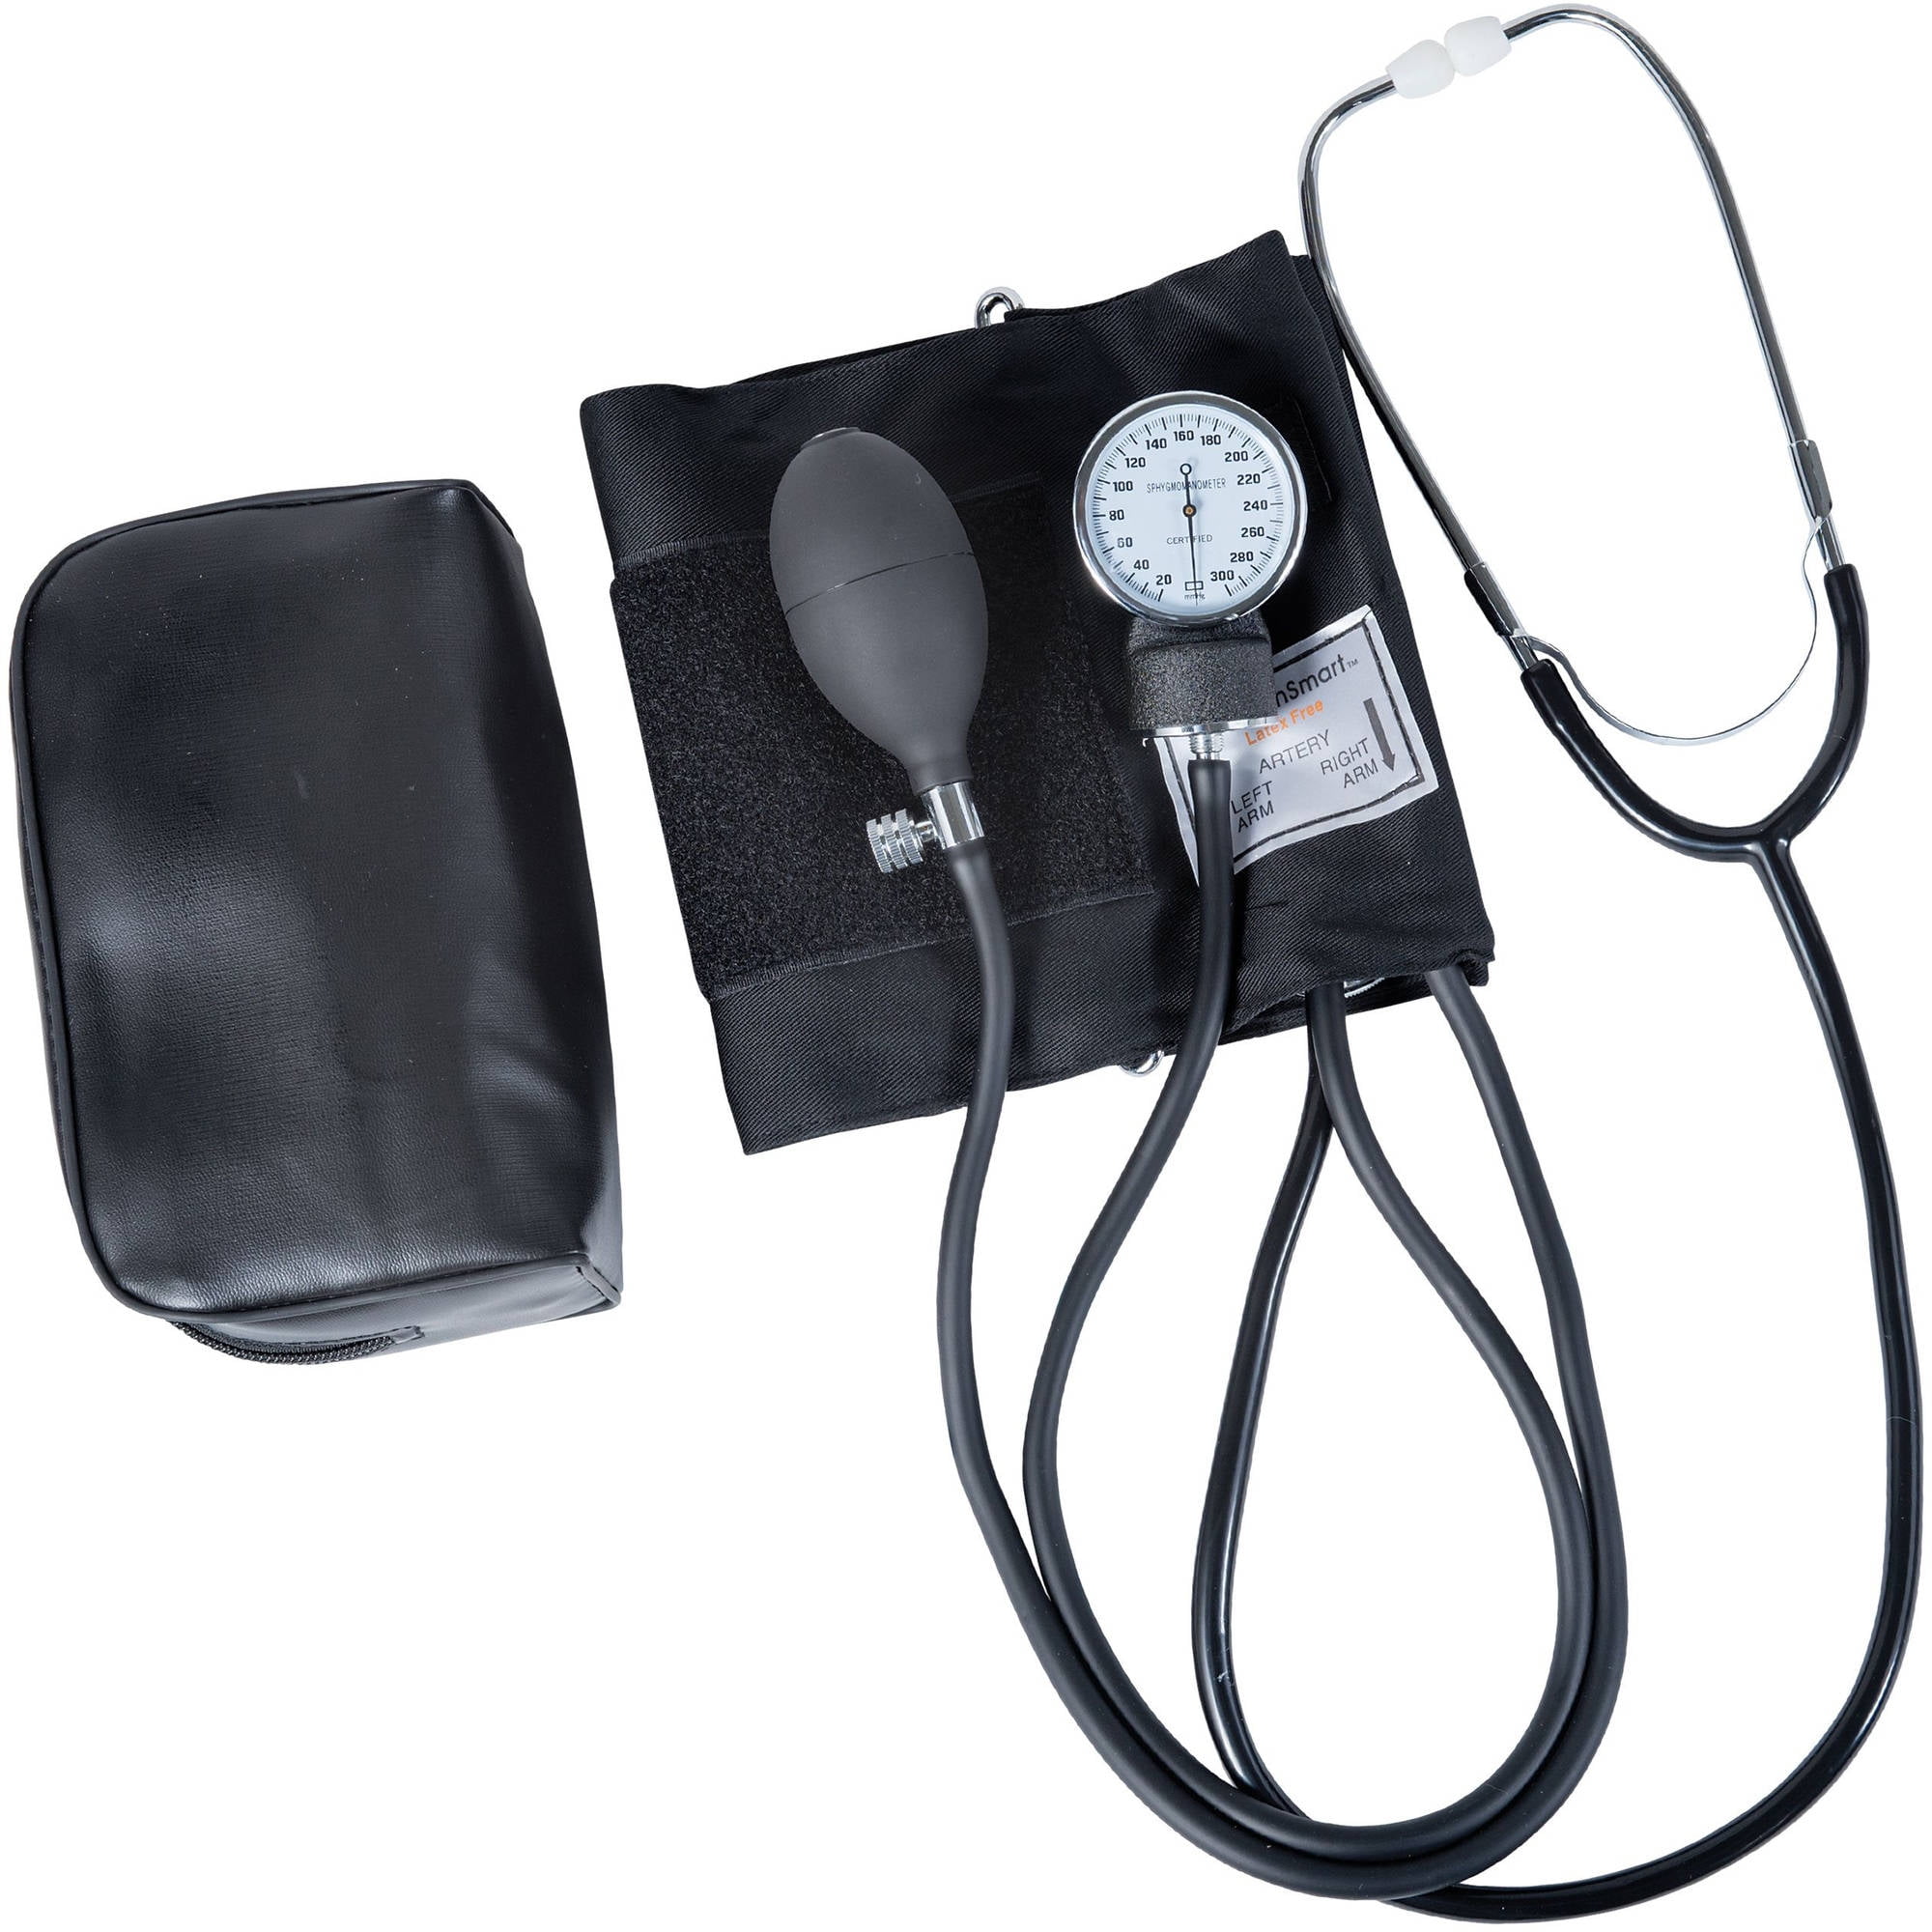 HealthSmart Healthsmart Home Blood Pressure Kit - Manual